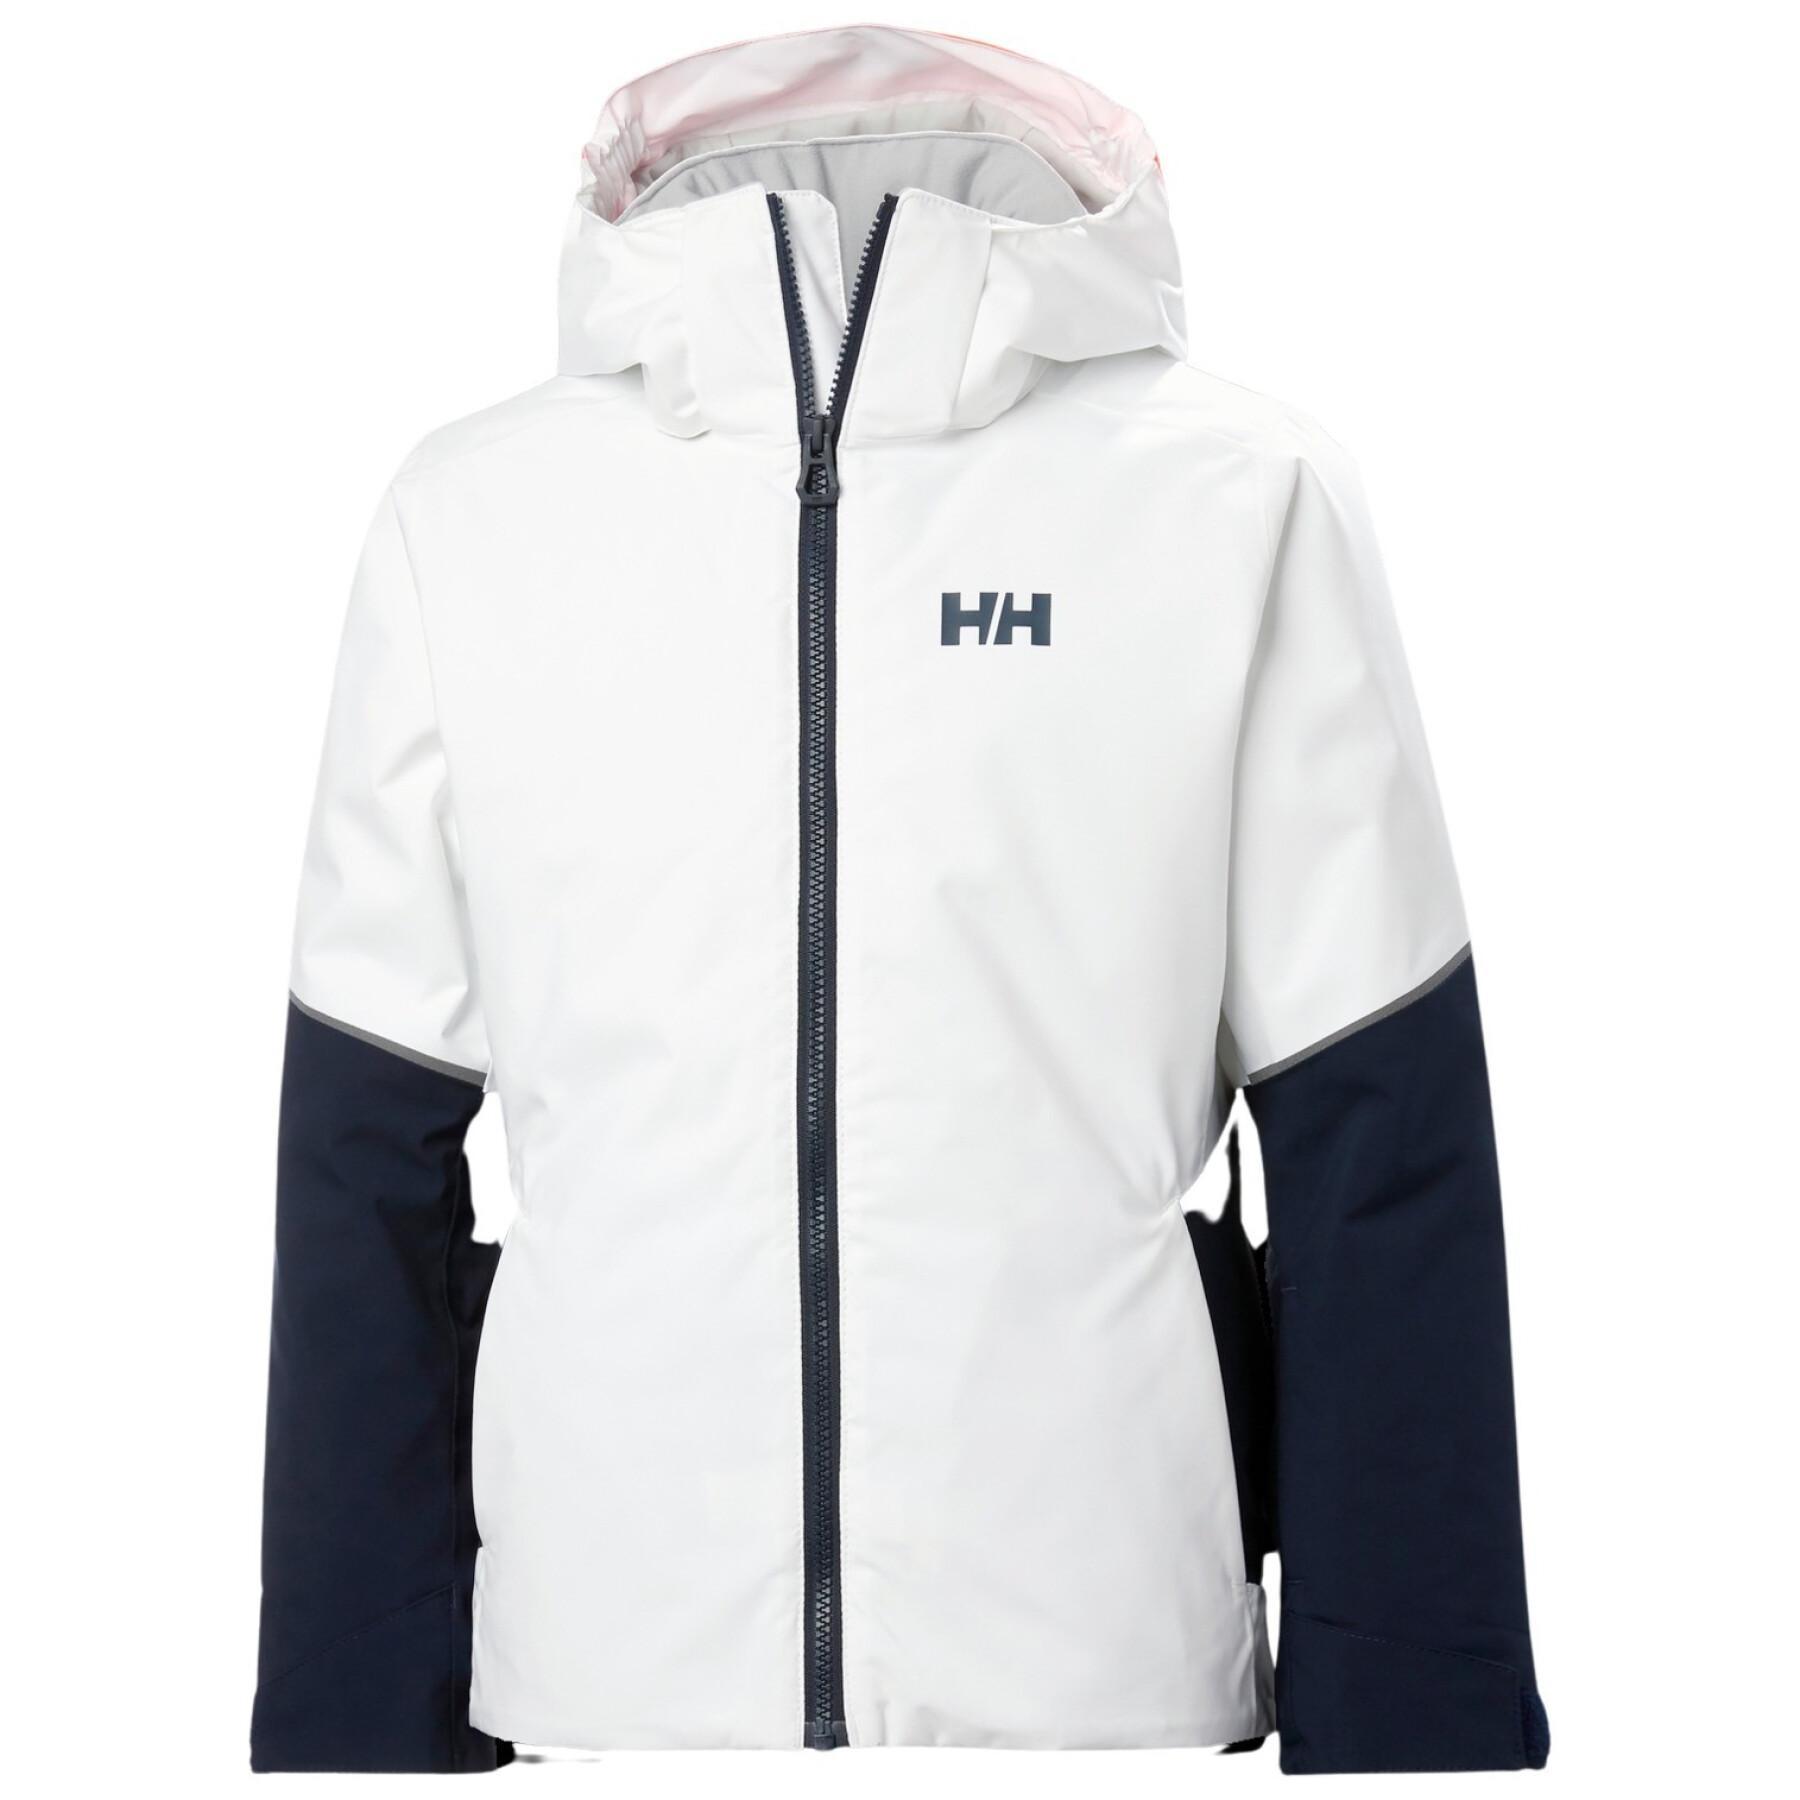 Children's ski jacket Helly Hansen Jewel